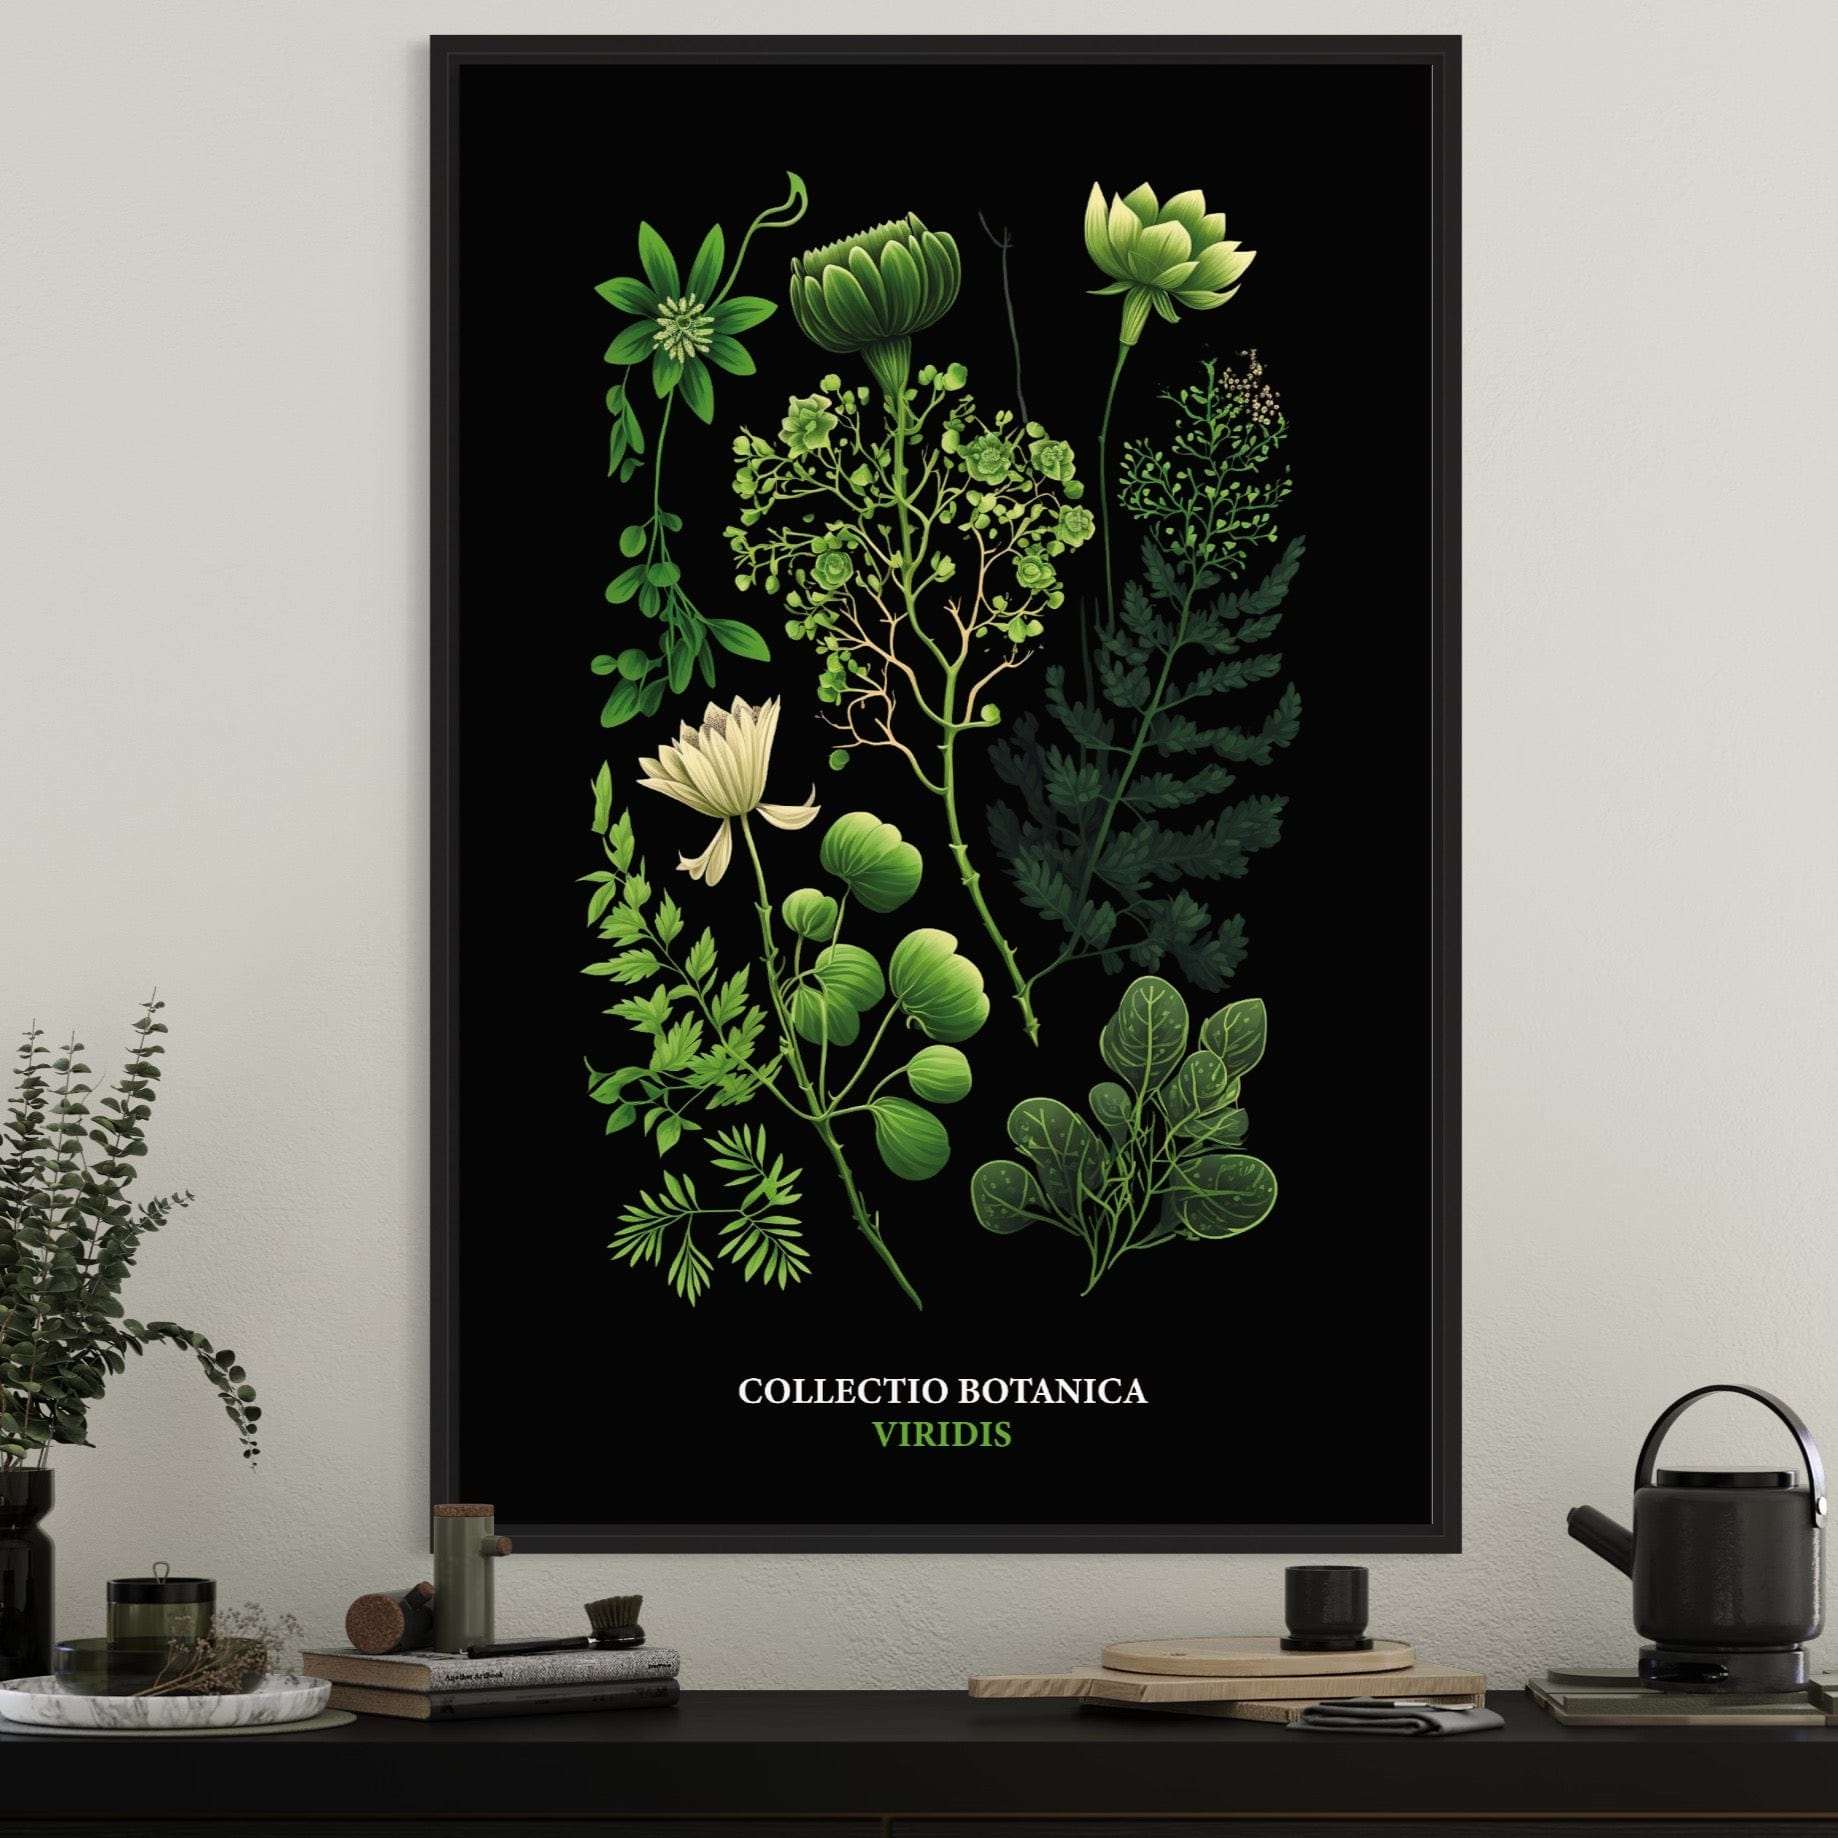 "Collectio Botanica" – Elegante Botanische Kunstprints Prints & Art Dreizack oesterreich handgemachte geschenke in wien